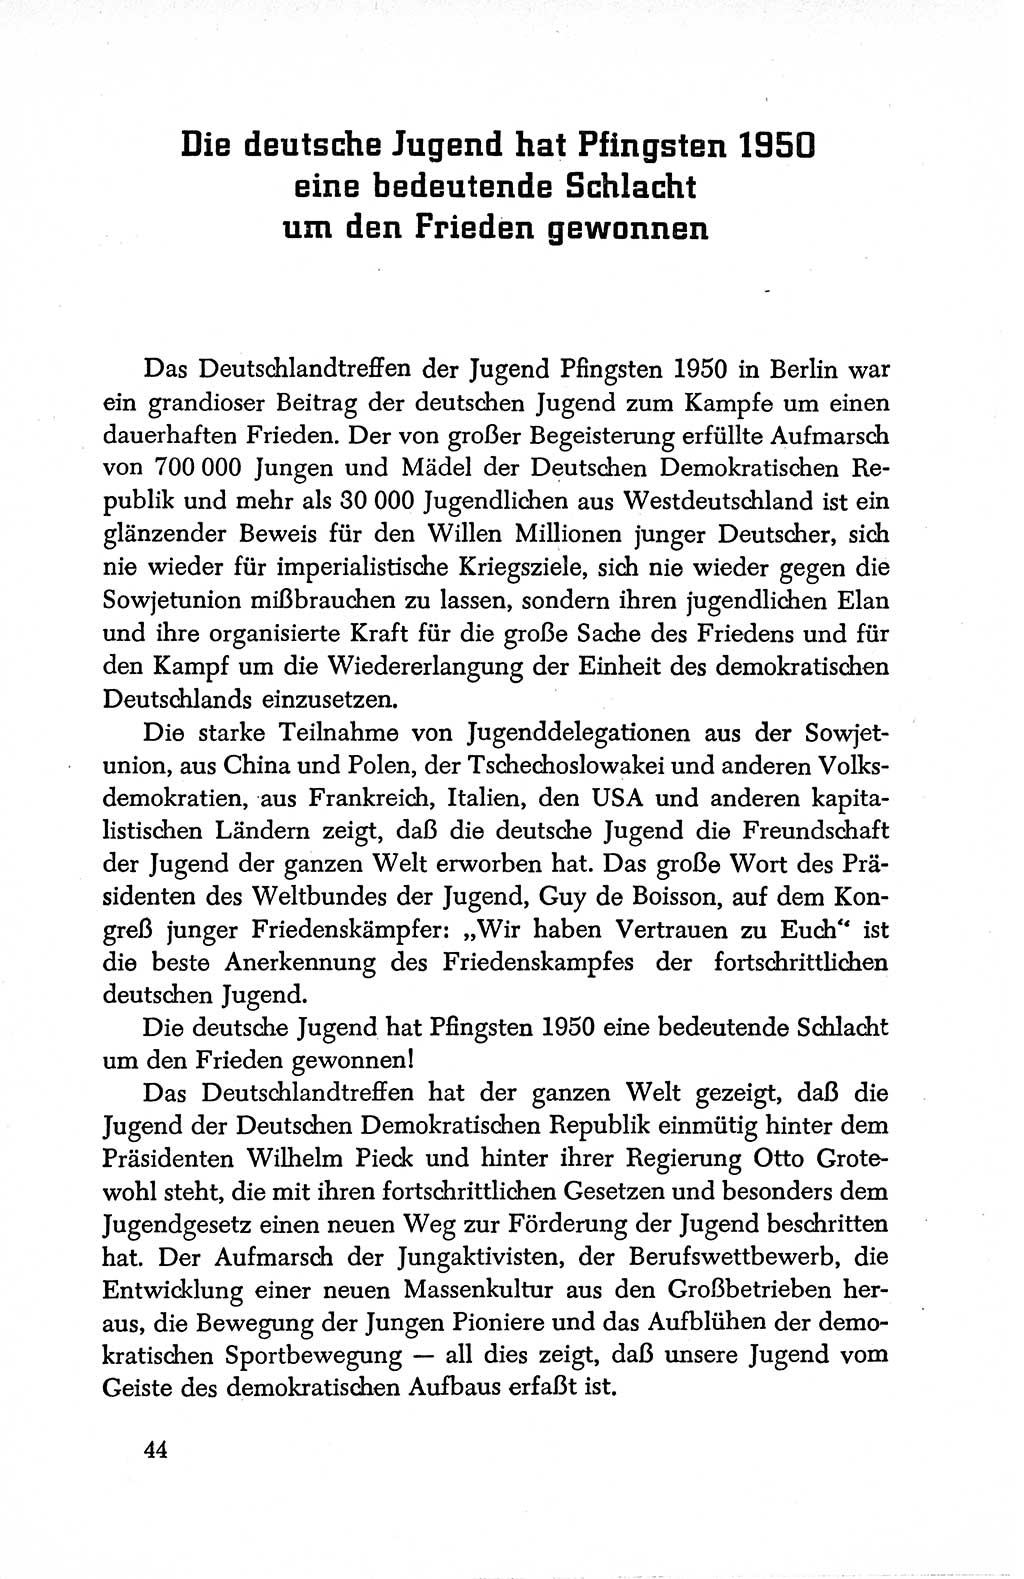 Dokumente der Sozialistischen Einheitspartei Deutschlands (SED) [Deutsche Demokratische Republik (DDR)] 1950-1952, Seite 44 (Dok. SED DDR 1950-1952, S. 44)